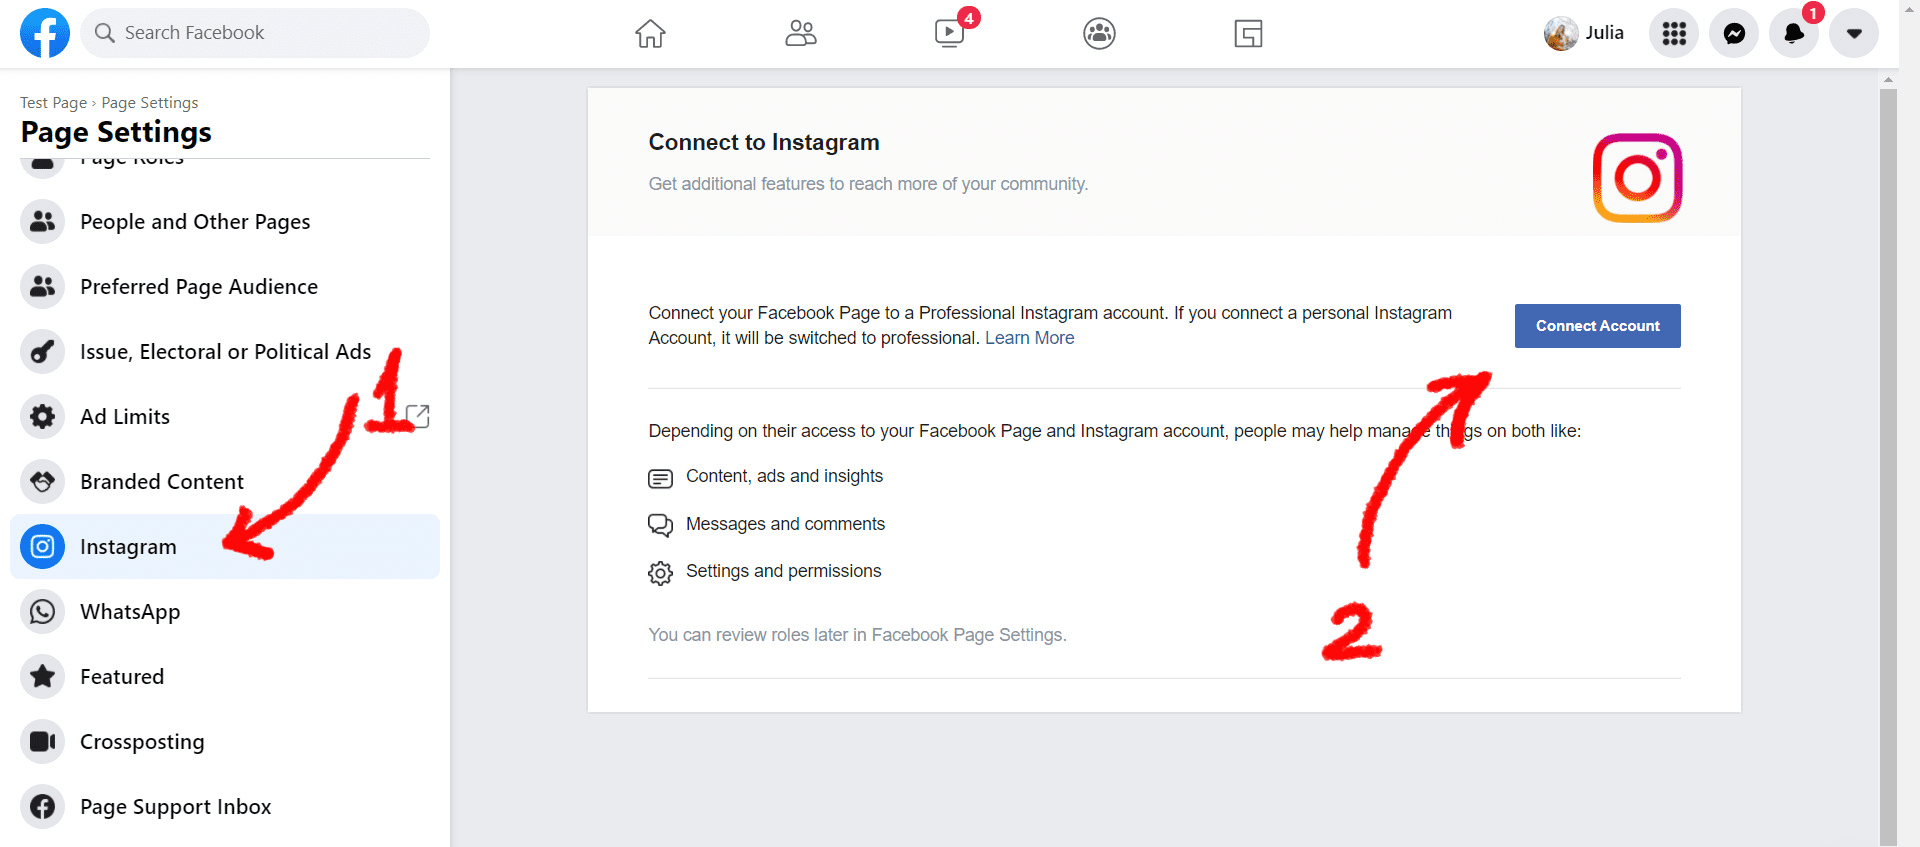 Facebook 'Connect Account' button